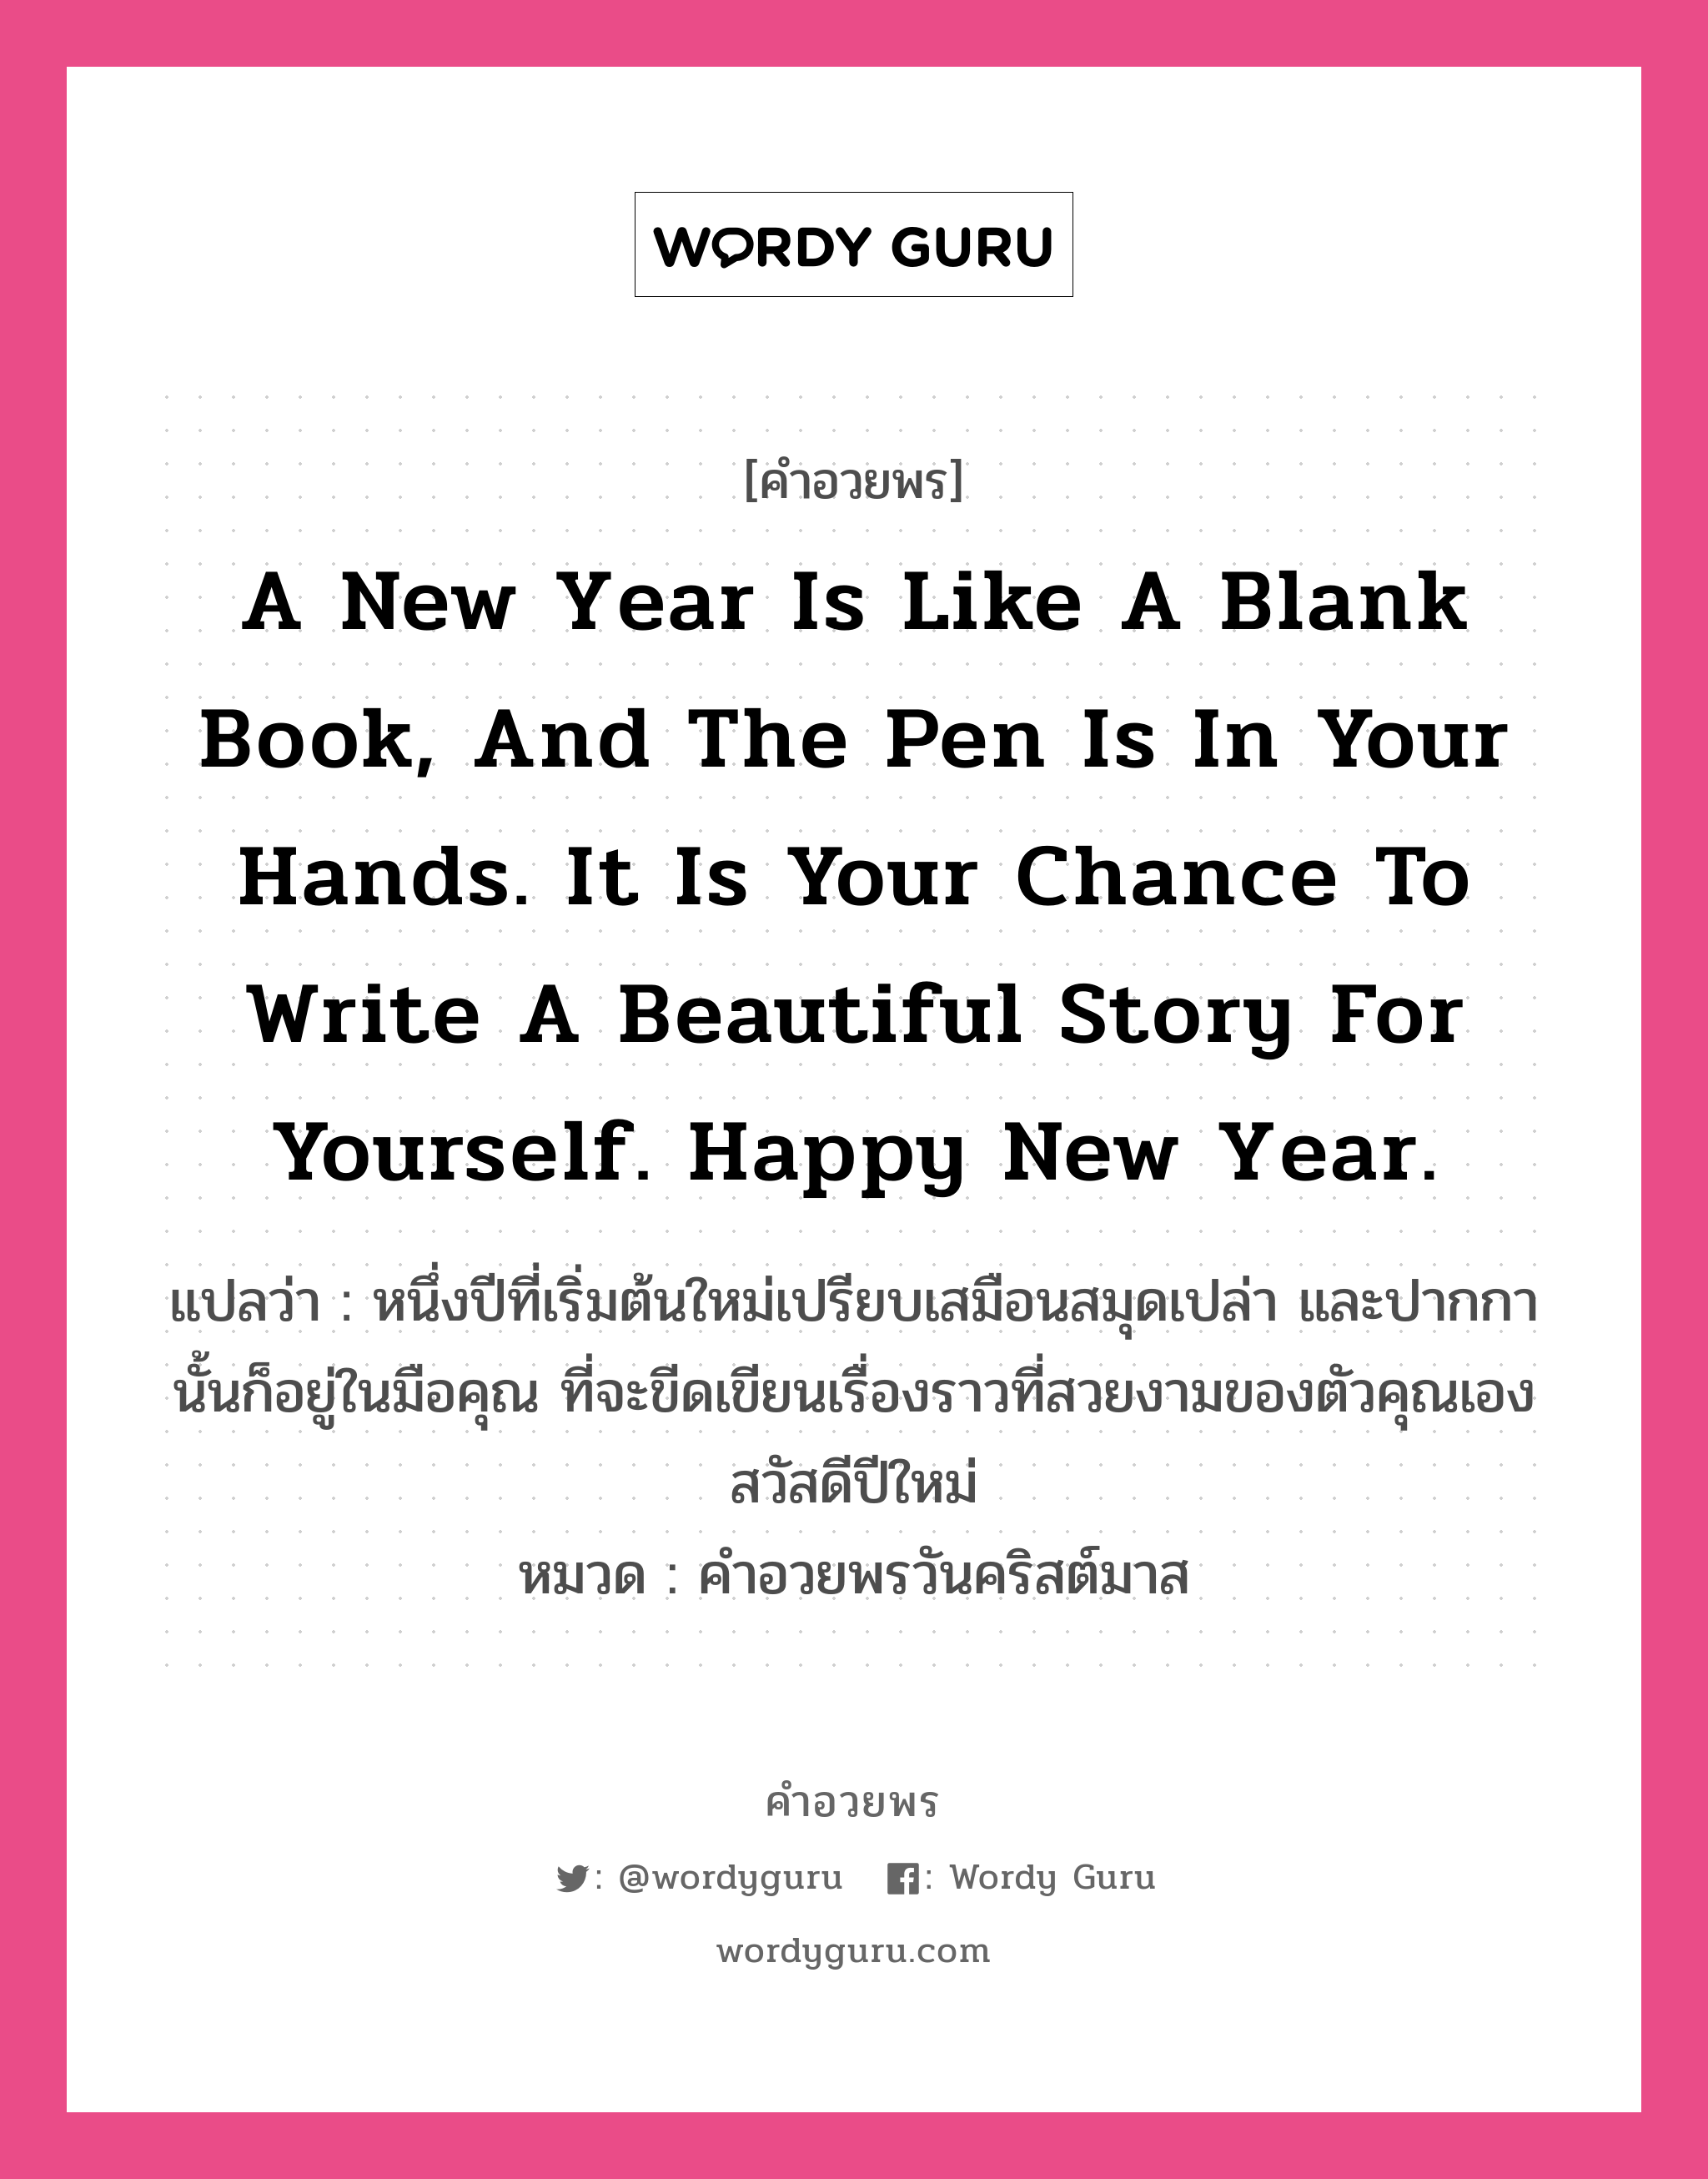 A new year is like a blank book, and the pen is in your hands. It is your chance to write a beautiful story for yourself. Happy New Year. คำศัพท์ในกลุ่มประเภท คำอวยพรวันคริสต์มาส, แปลว่า หนึ่งปีที่เริ่มต้นใหม่เปรียบเสมือนสมุดเปล่า และปากกานั้นก็อยู่ในมือคุณ ที่จะขีดเขียนเรื่องราวที่สวยงามของตัวคุณเอง สวัสดีปีใหม่ หมวด คำอวยพรวันคริสต์มาส หมวด คำอวยพรวันคริสต์มาส